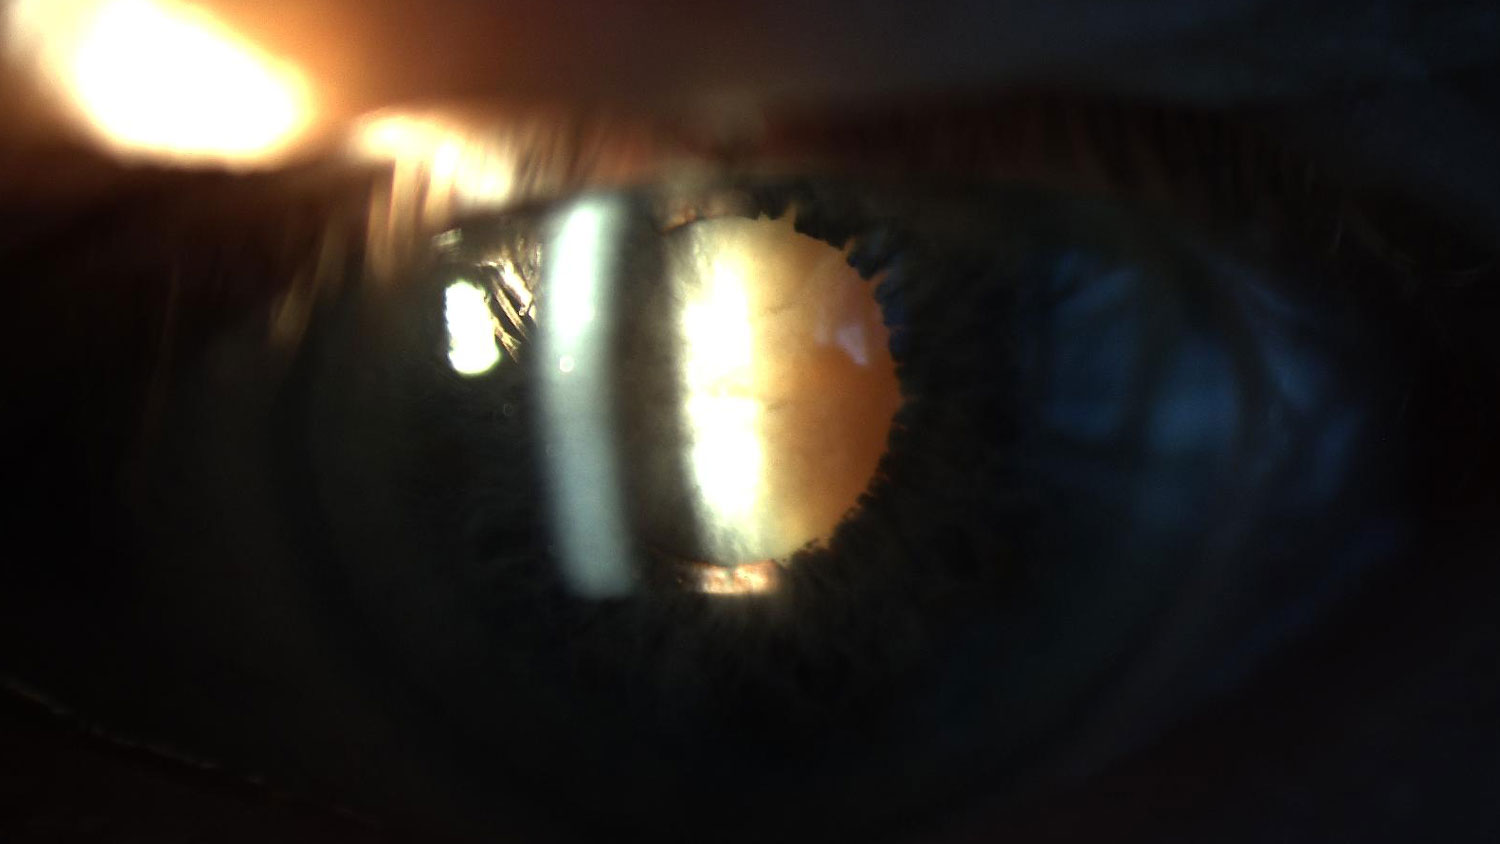 Mature cataract